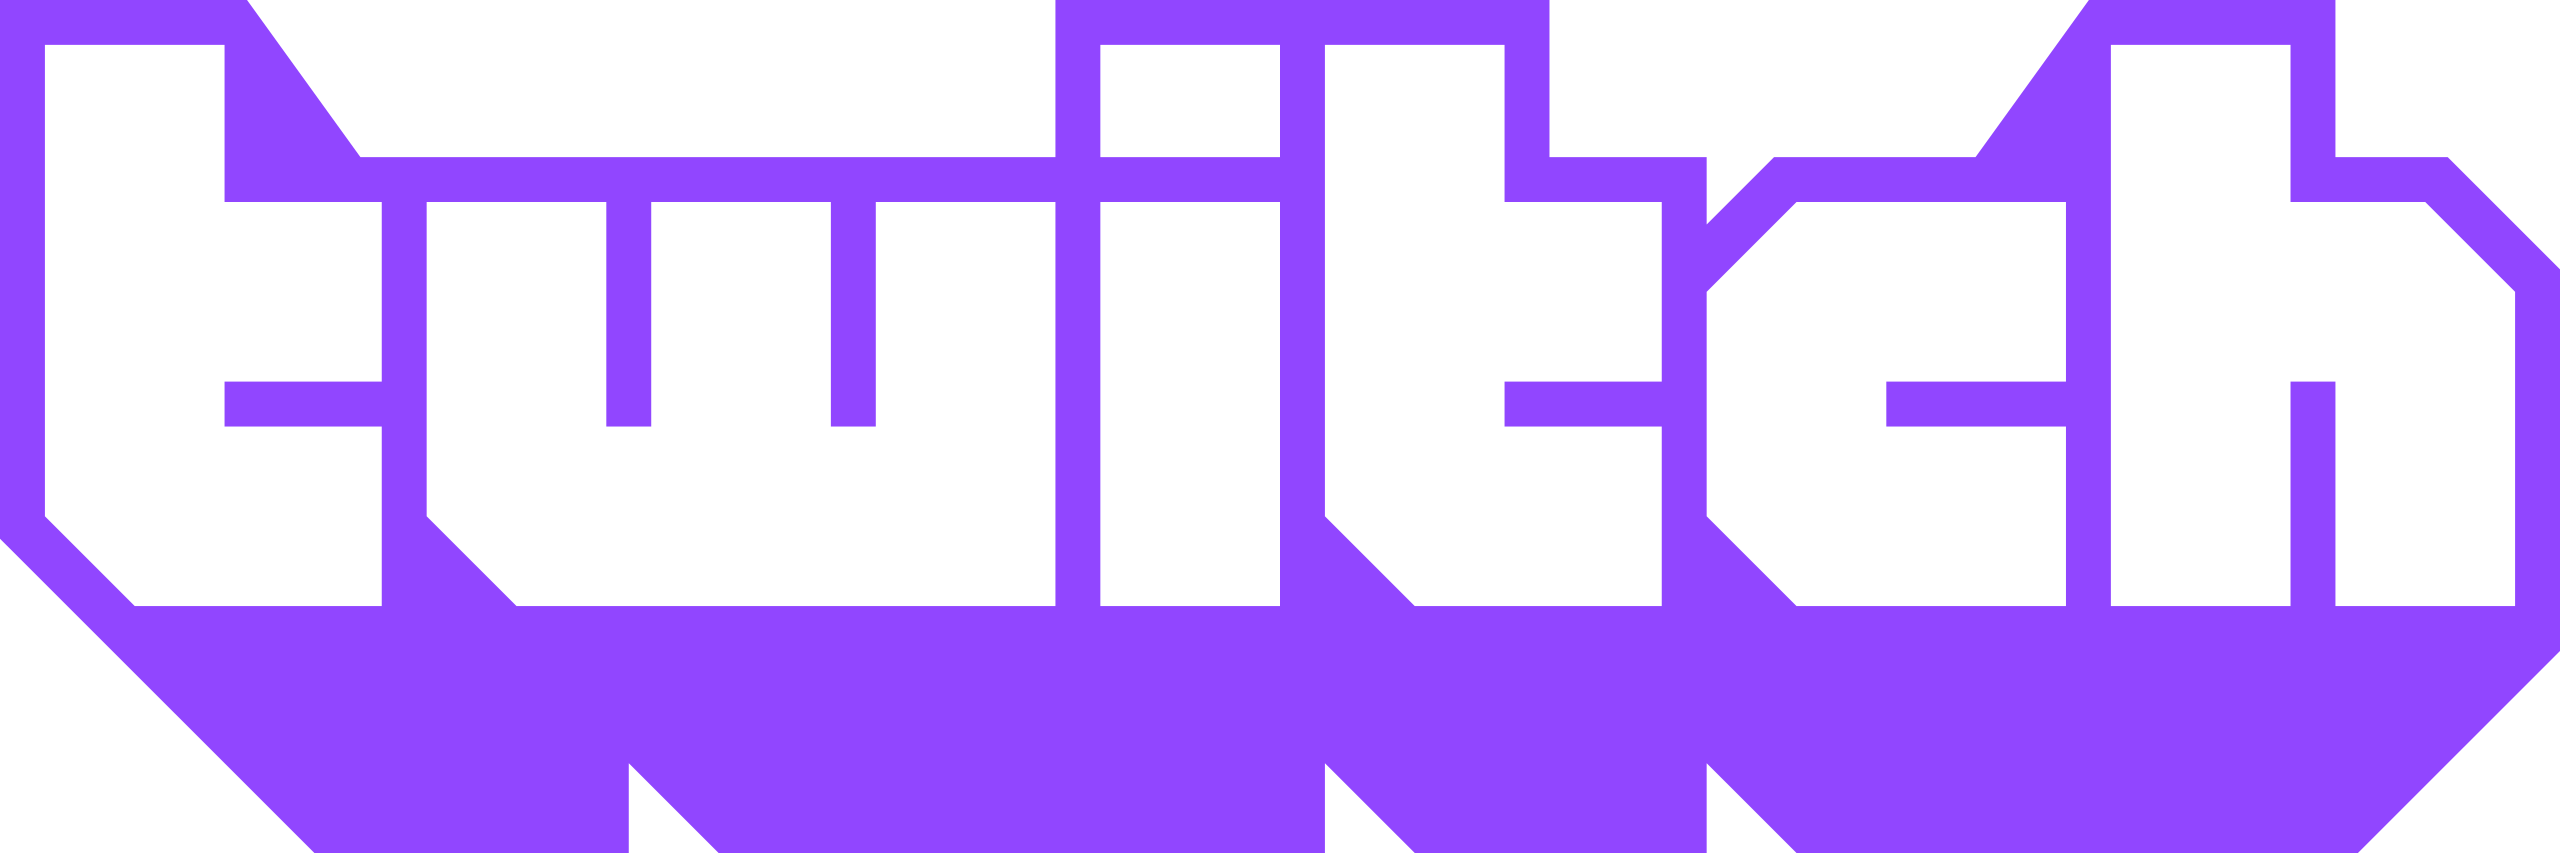 Twitch_logo_2019